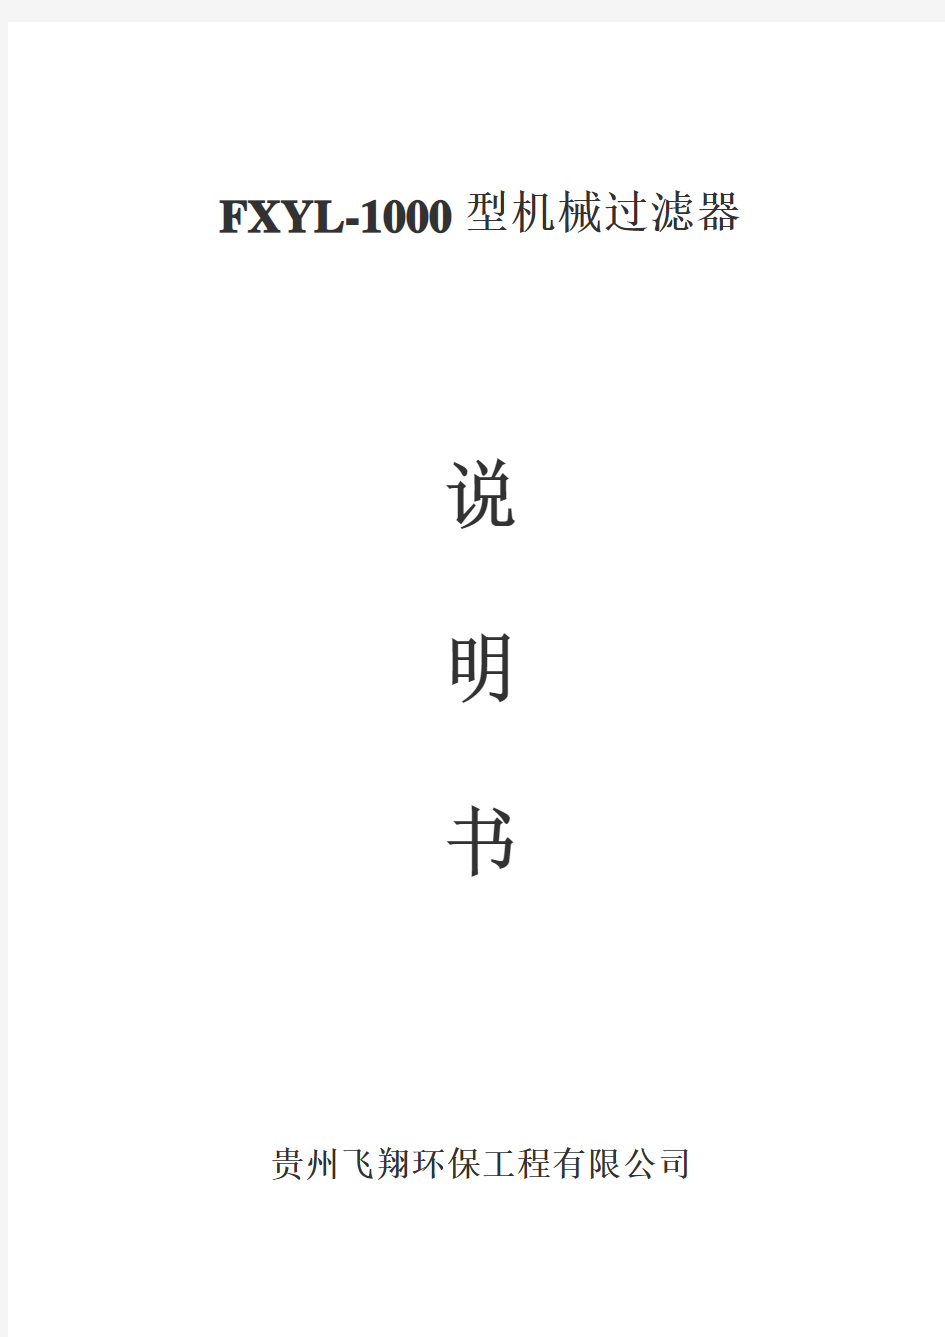 FXYL-1000型机械过滤器使用说明书